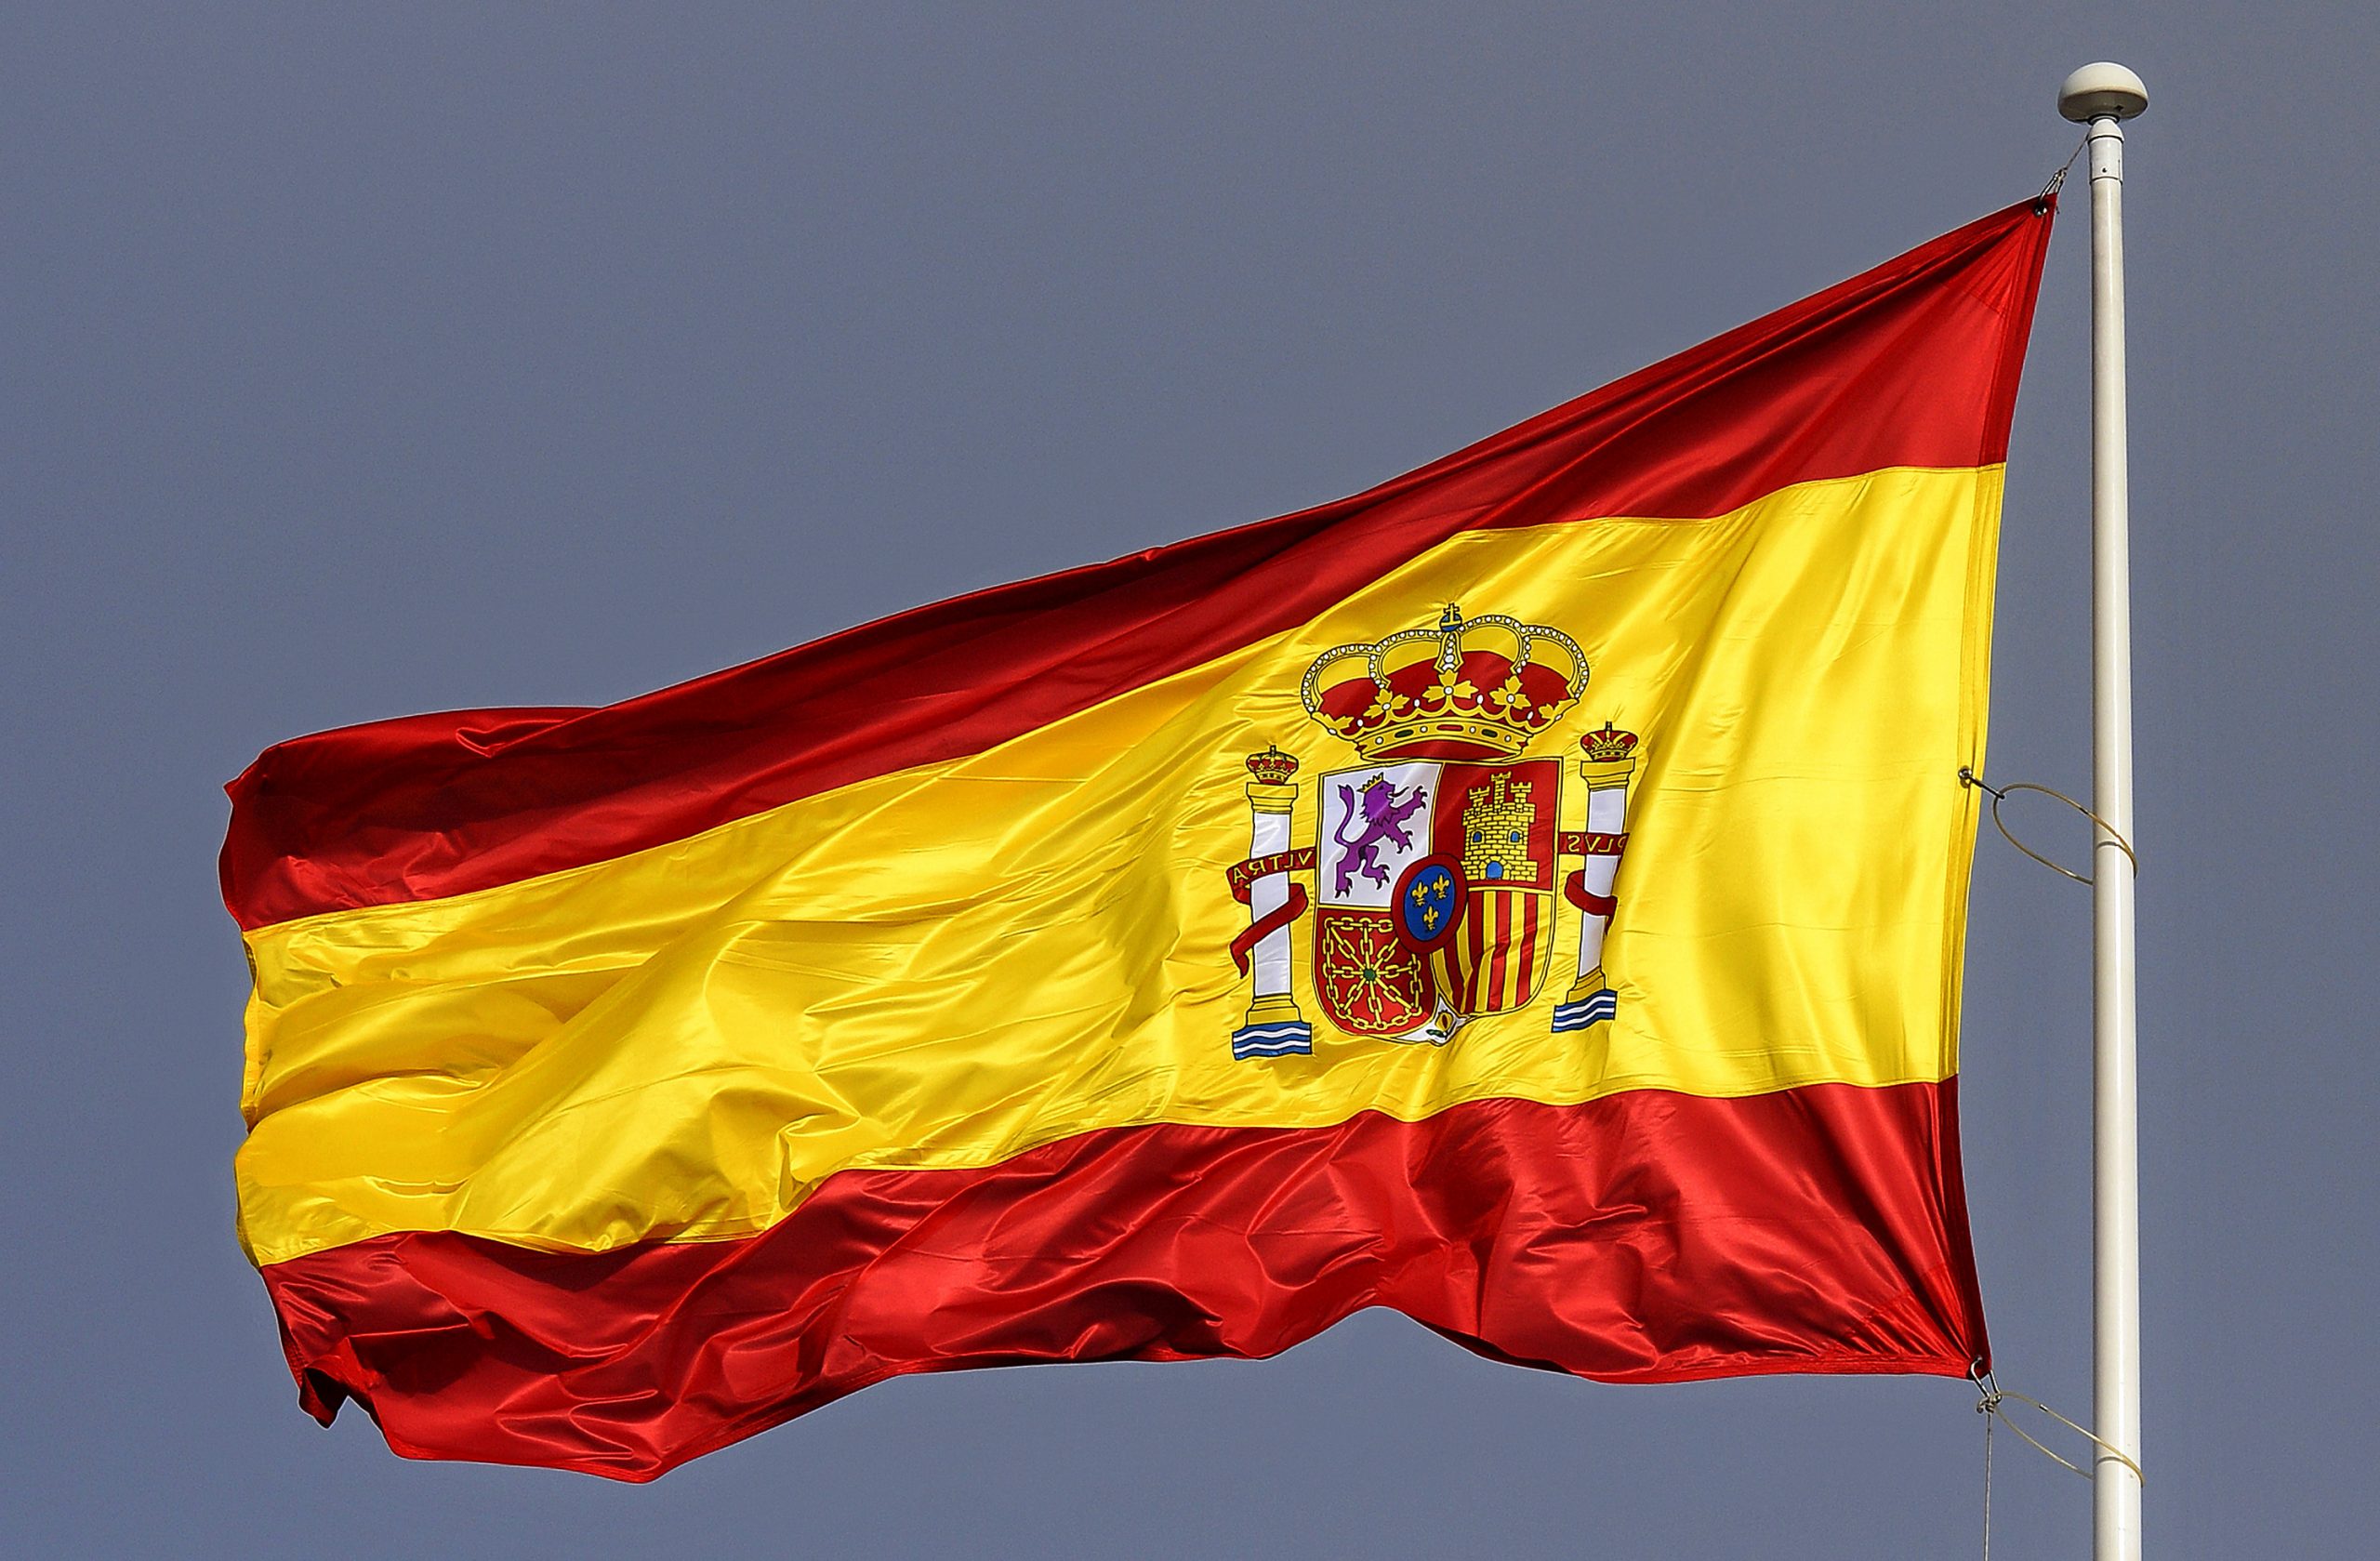 Image Espagnol A Imprimer Luxe Stock Espagne Arrestation De Deux Femmes soupçonnées De Jihad